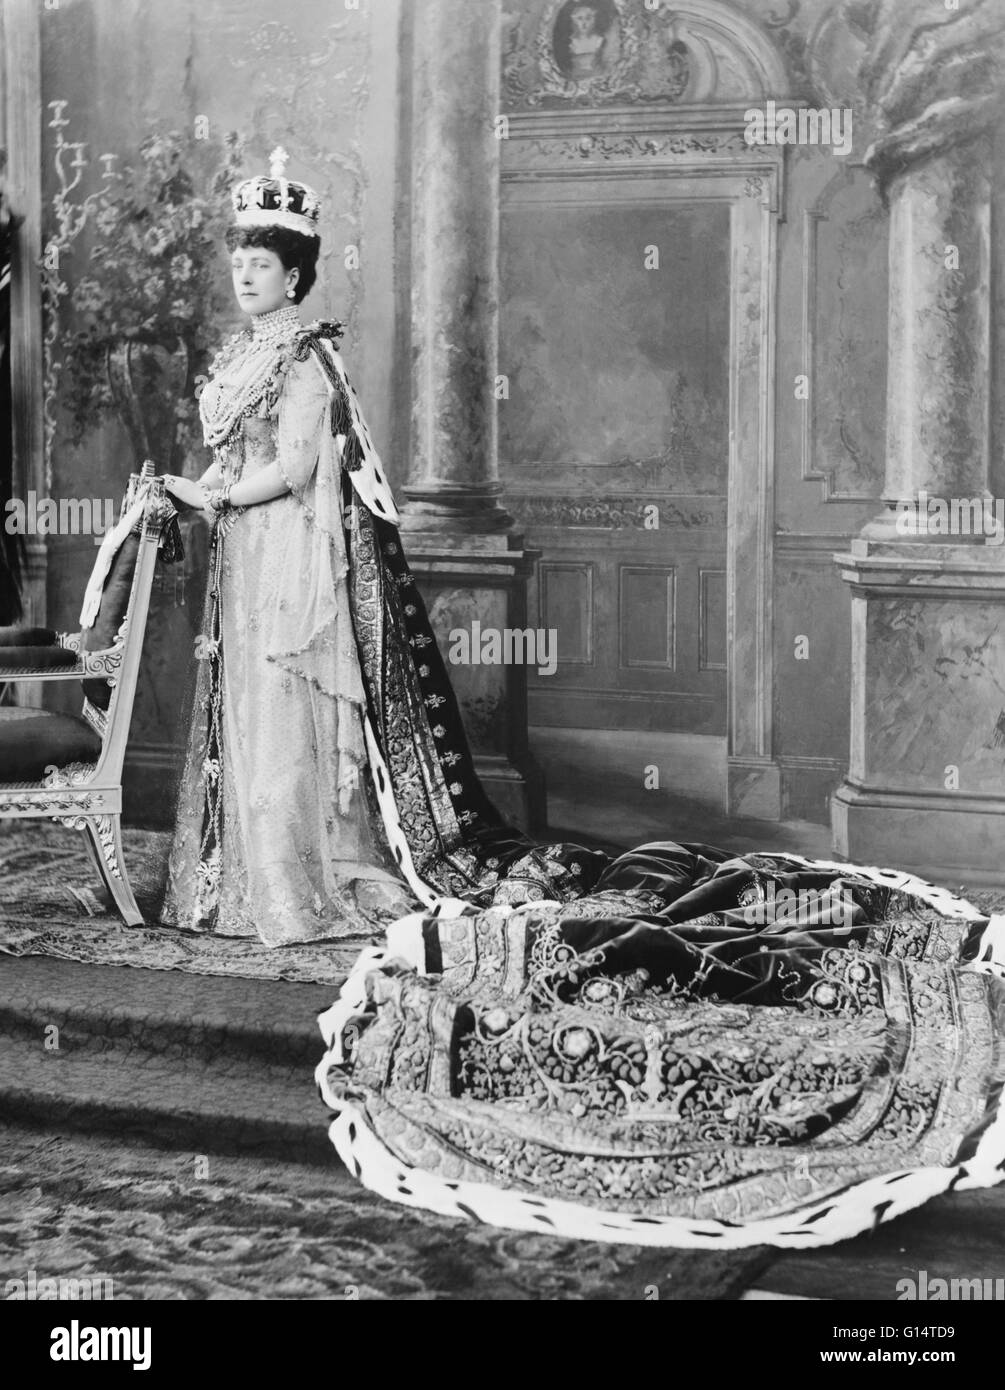 Portrait de la Reine Alexandra dans son couronnement peignoirs ; le palais de Buckingham, 1902. Alexandra de Danemark (1844-1925) était l'épouse d'Édouard VII du Royaume-Uni. En tant que telle, elle a été Reine consort du Royaume-Uni et les Dominions britanniques, et l'Impératrice du Banque D'Images